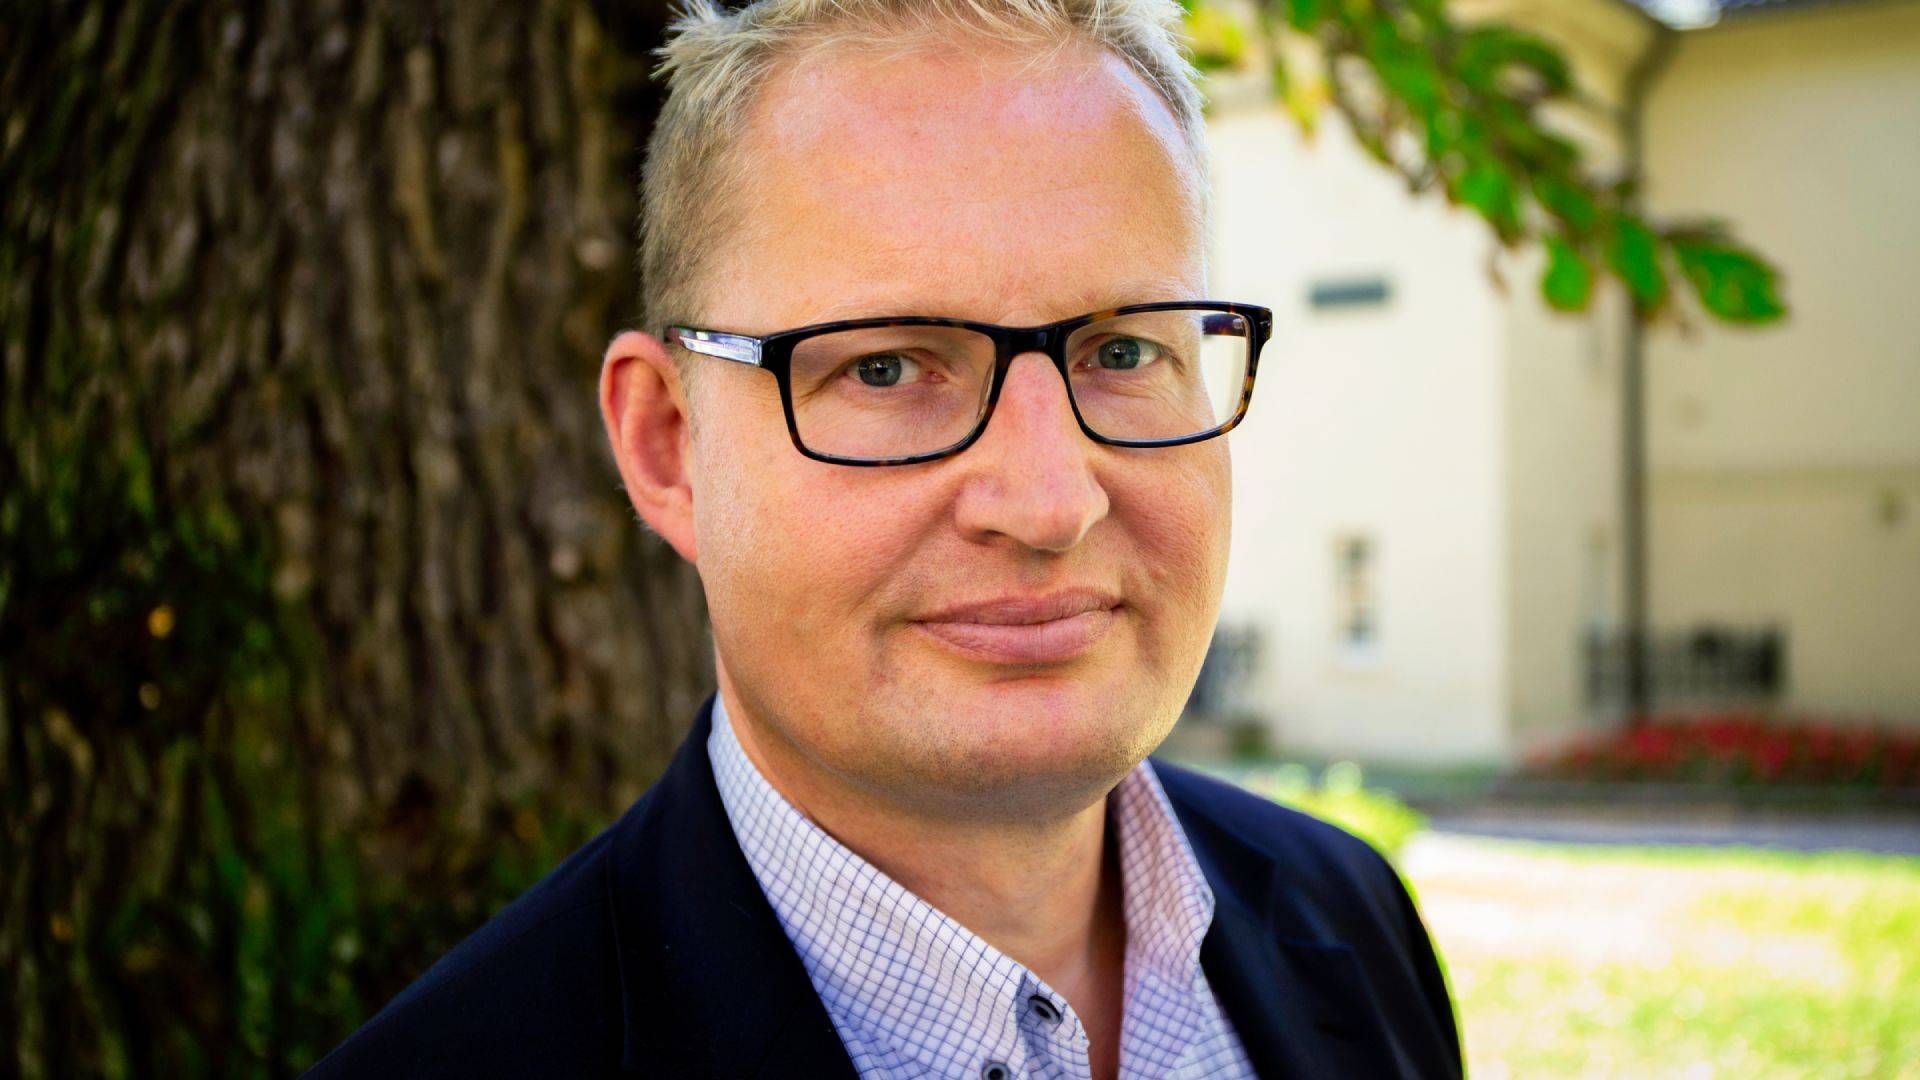 SKEPTISK: Kommunikasjonssjef i Huseierne, Carsten Pihl, mener det er negativt at kjøpet av Danske Bank godkjennes. | Foto: Huseierne